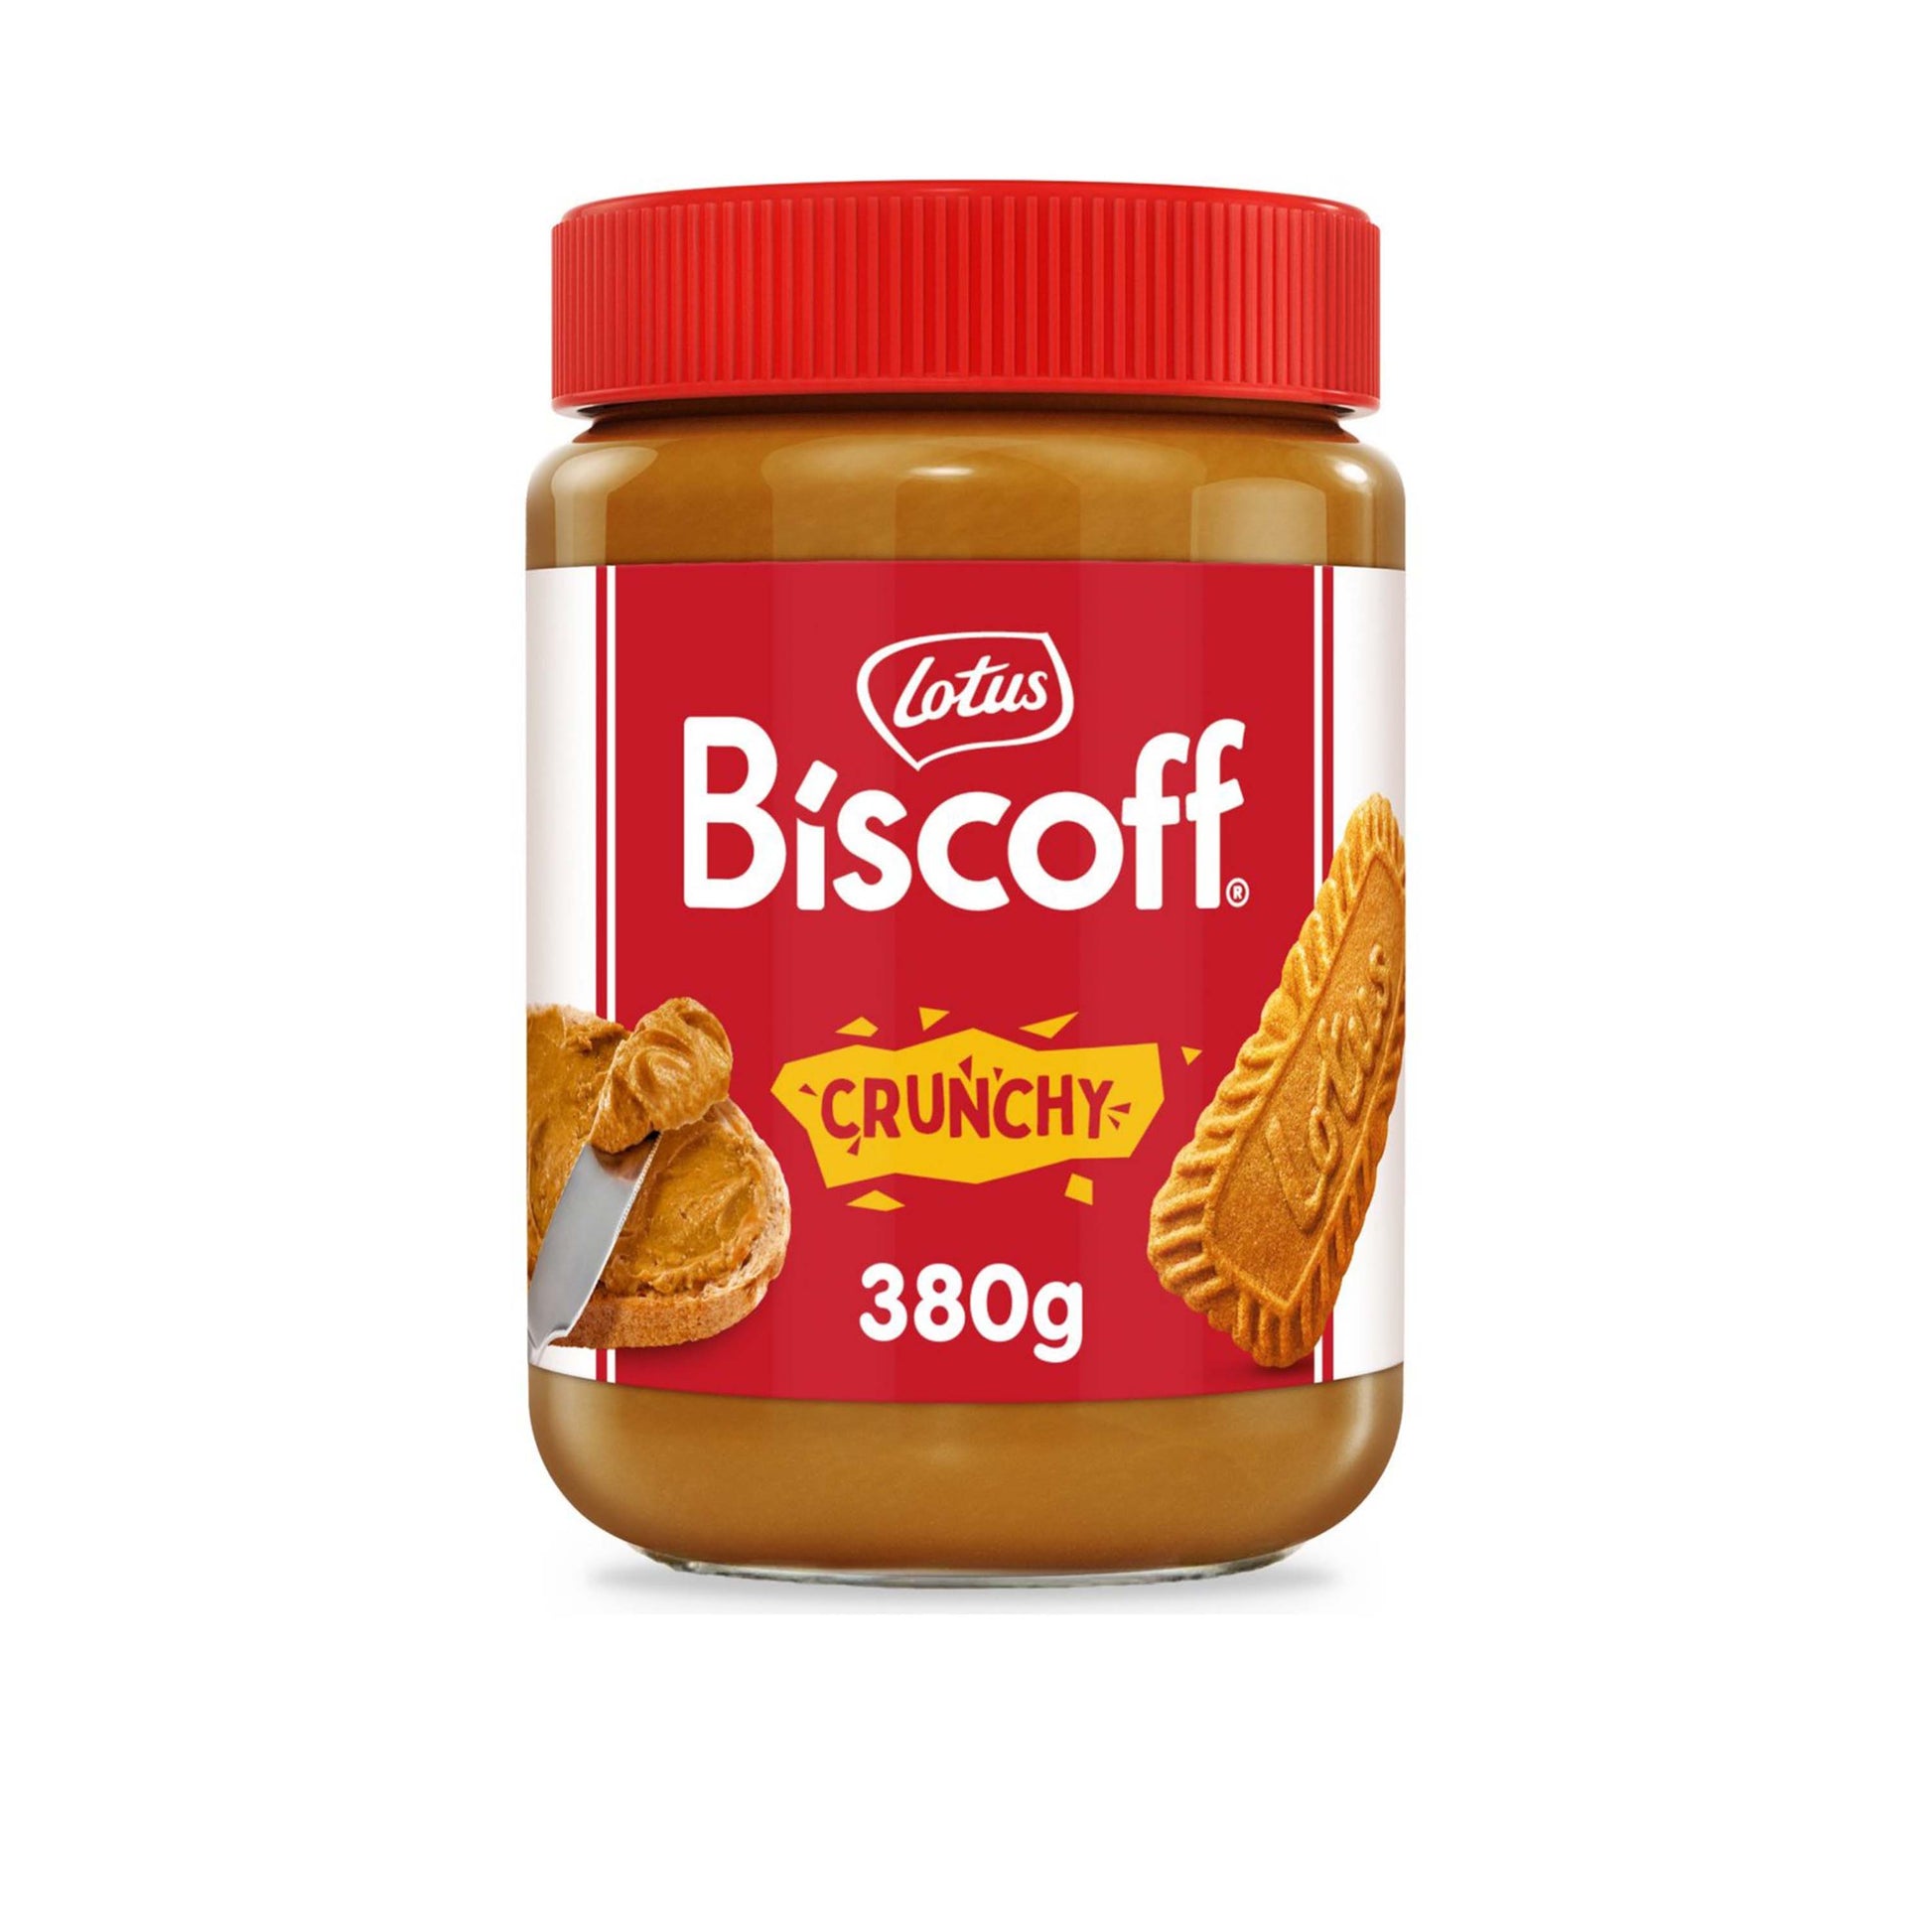 Lotus Biscoff Biscuit Crunchy Spread - 380g - BRITISH SNACKS